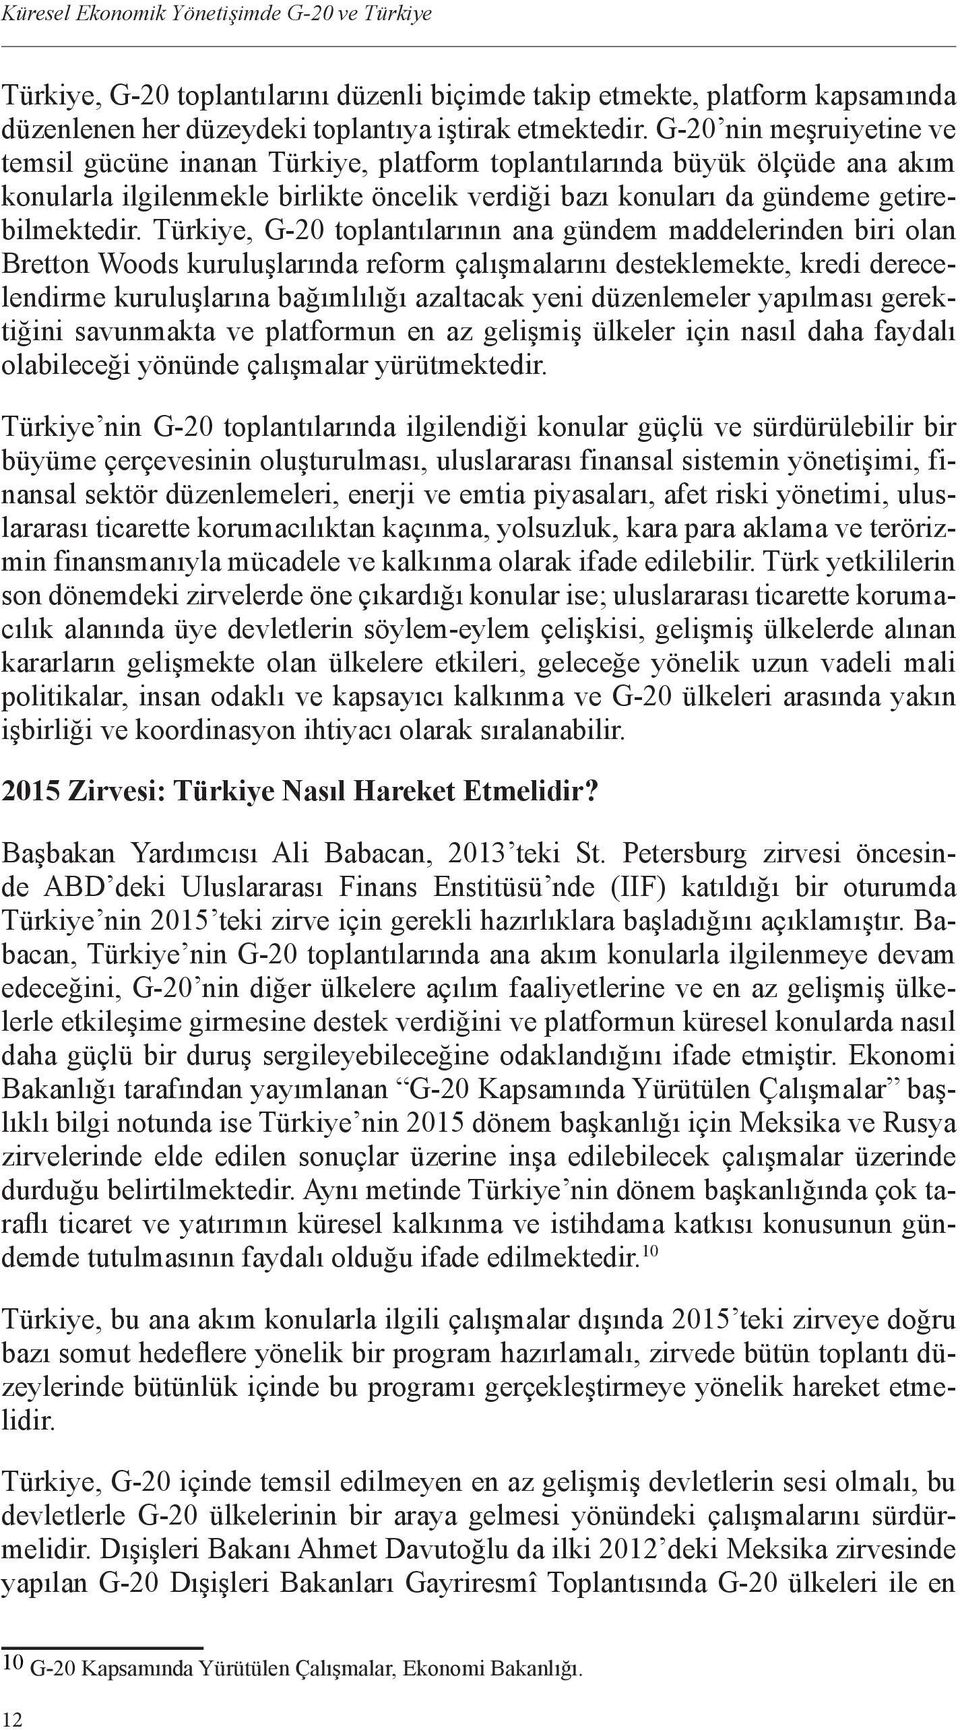 Türkiye, G-20 toplantılarının ana gündem maddelerinden biri olan Bretton Woods kuruluşlarında reform çalışmalarını desteklemekte, kredi derecelendirme kuruluşlarına bağımlılığı azaltacak yeni